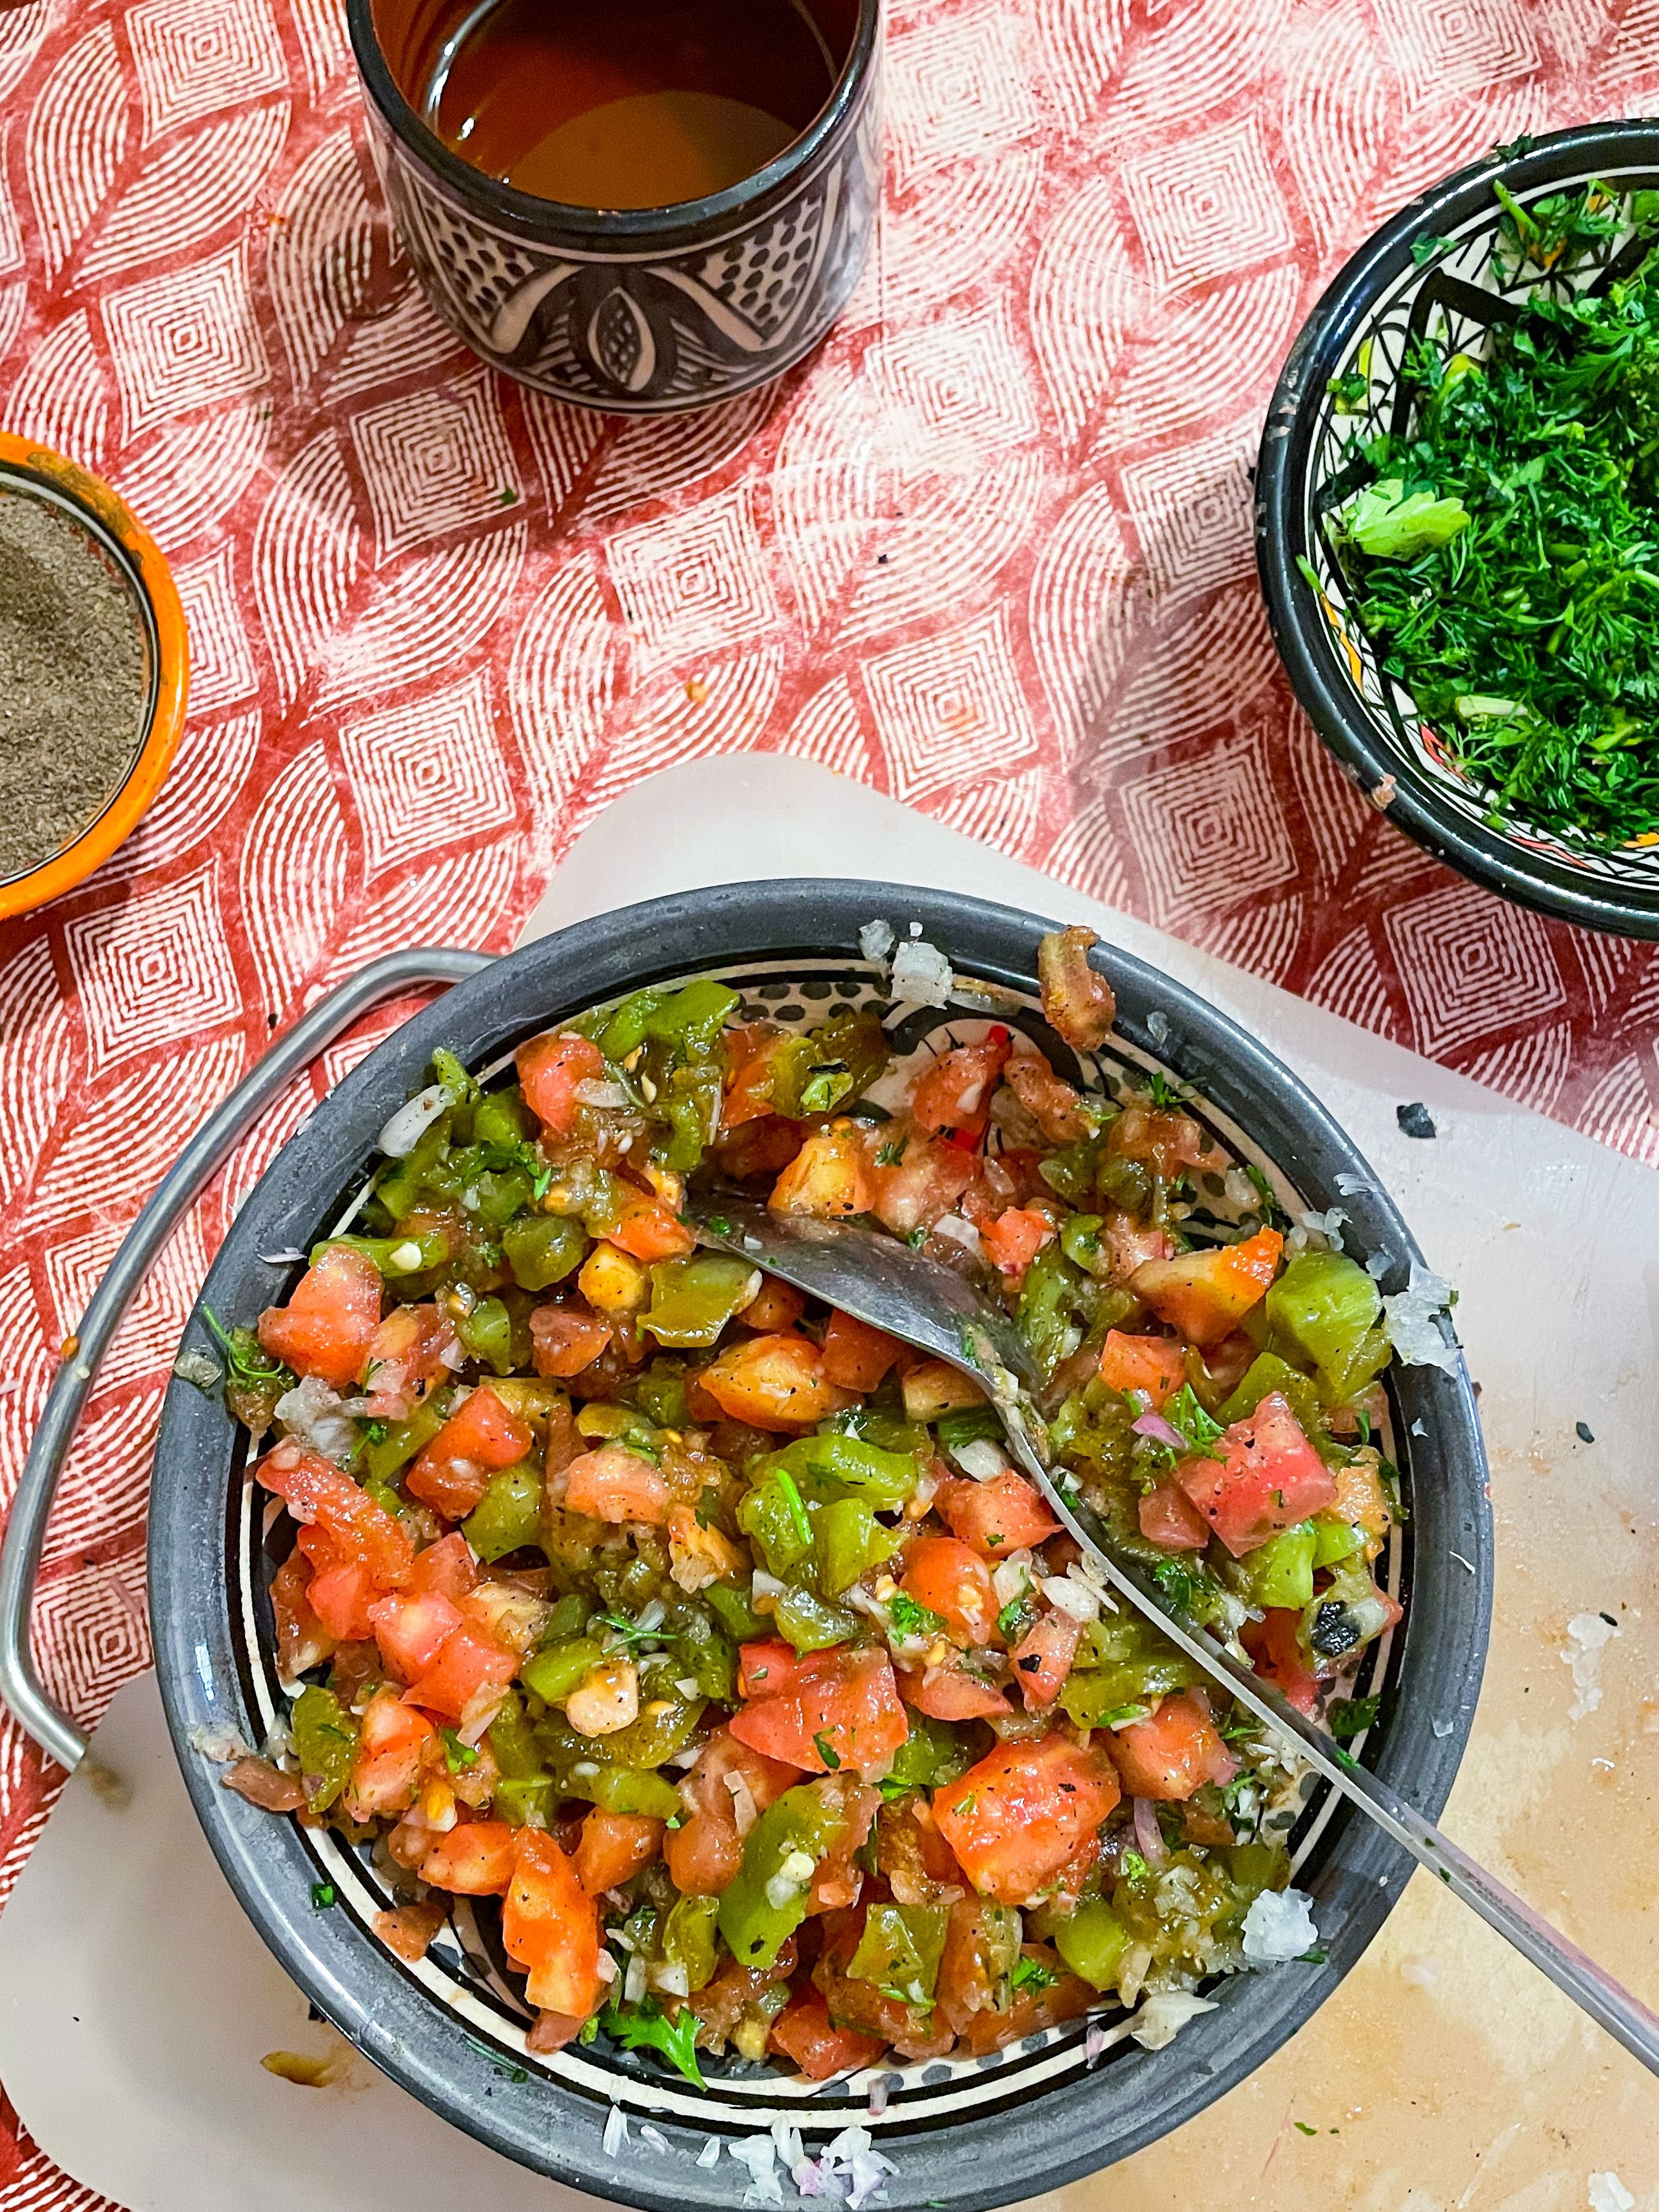 Marokkolainen tomaattisalaatti nimeltään Taktouka. Ai juma oli hyvää! Itsepähän tehtiin.